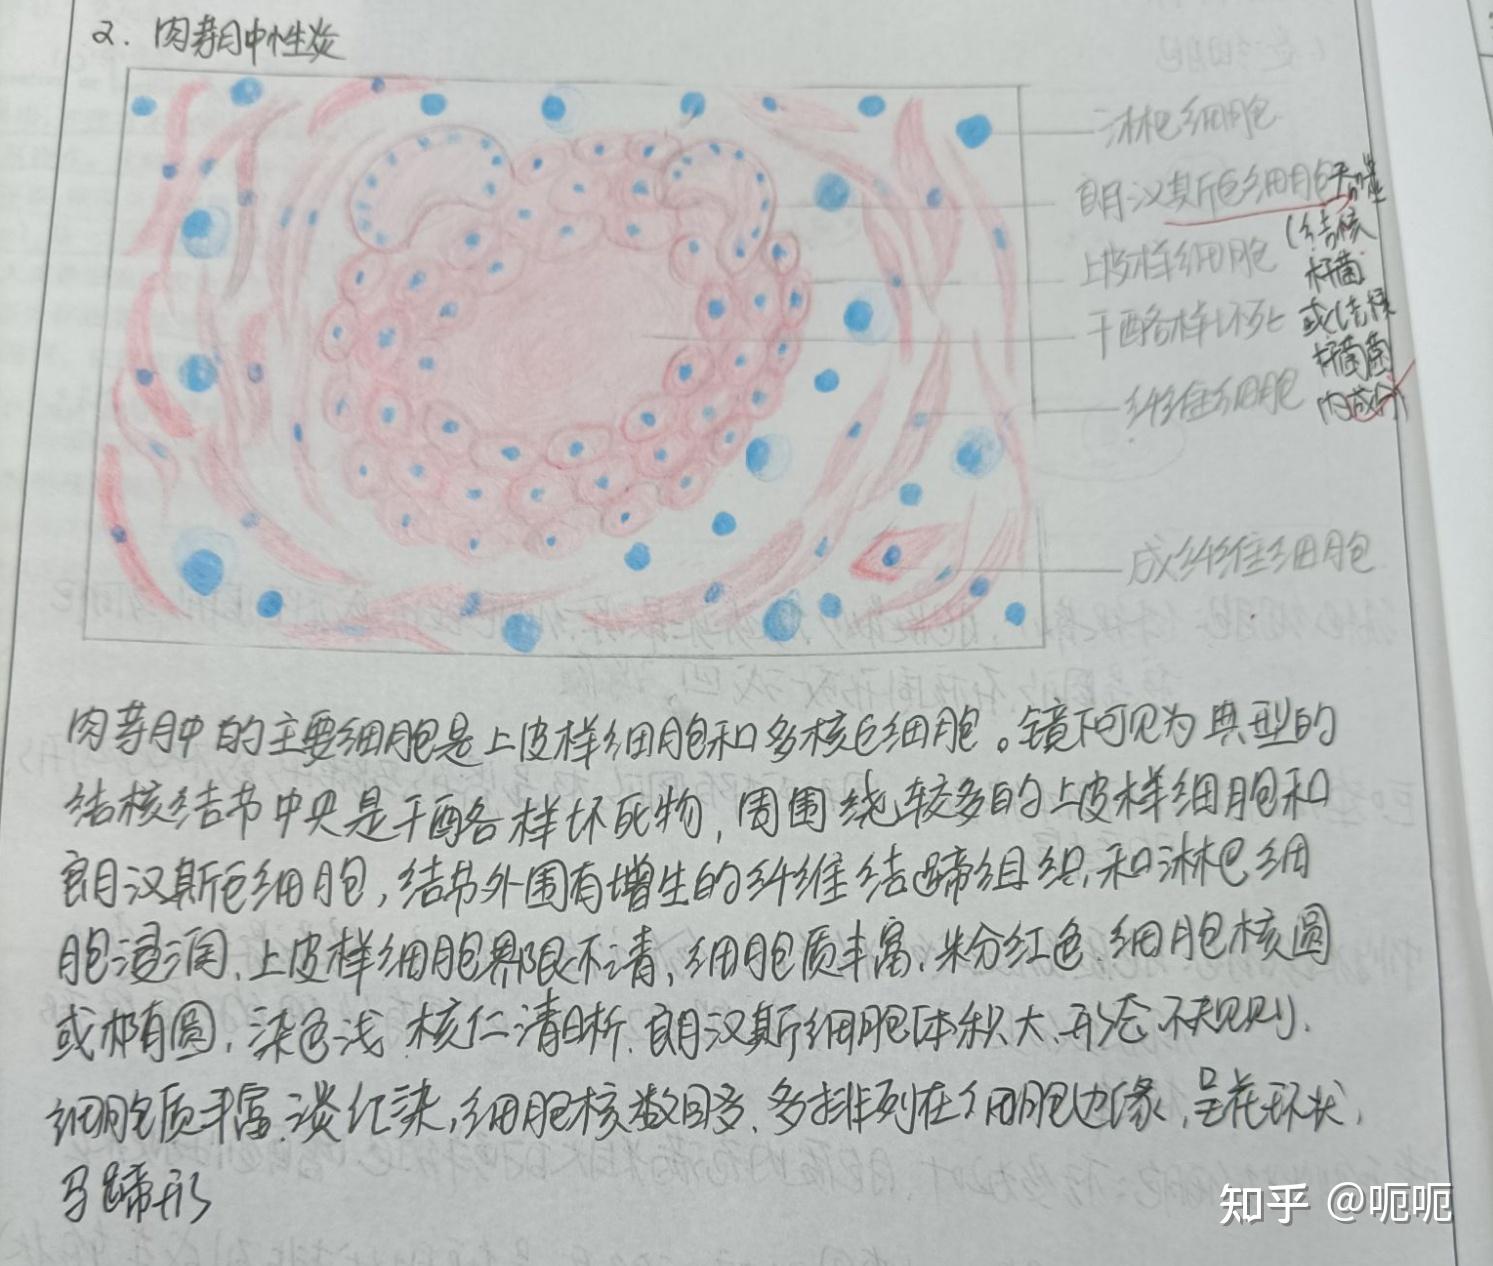 炎细胞红蓝铅笔手绘图图片